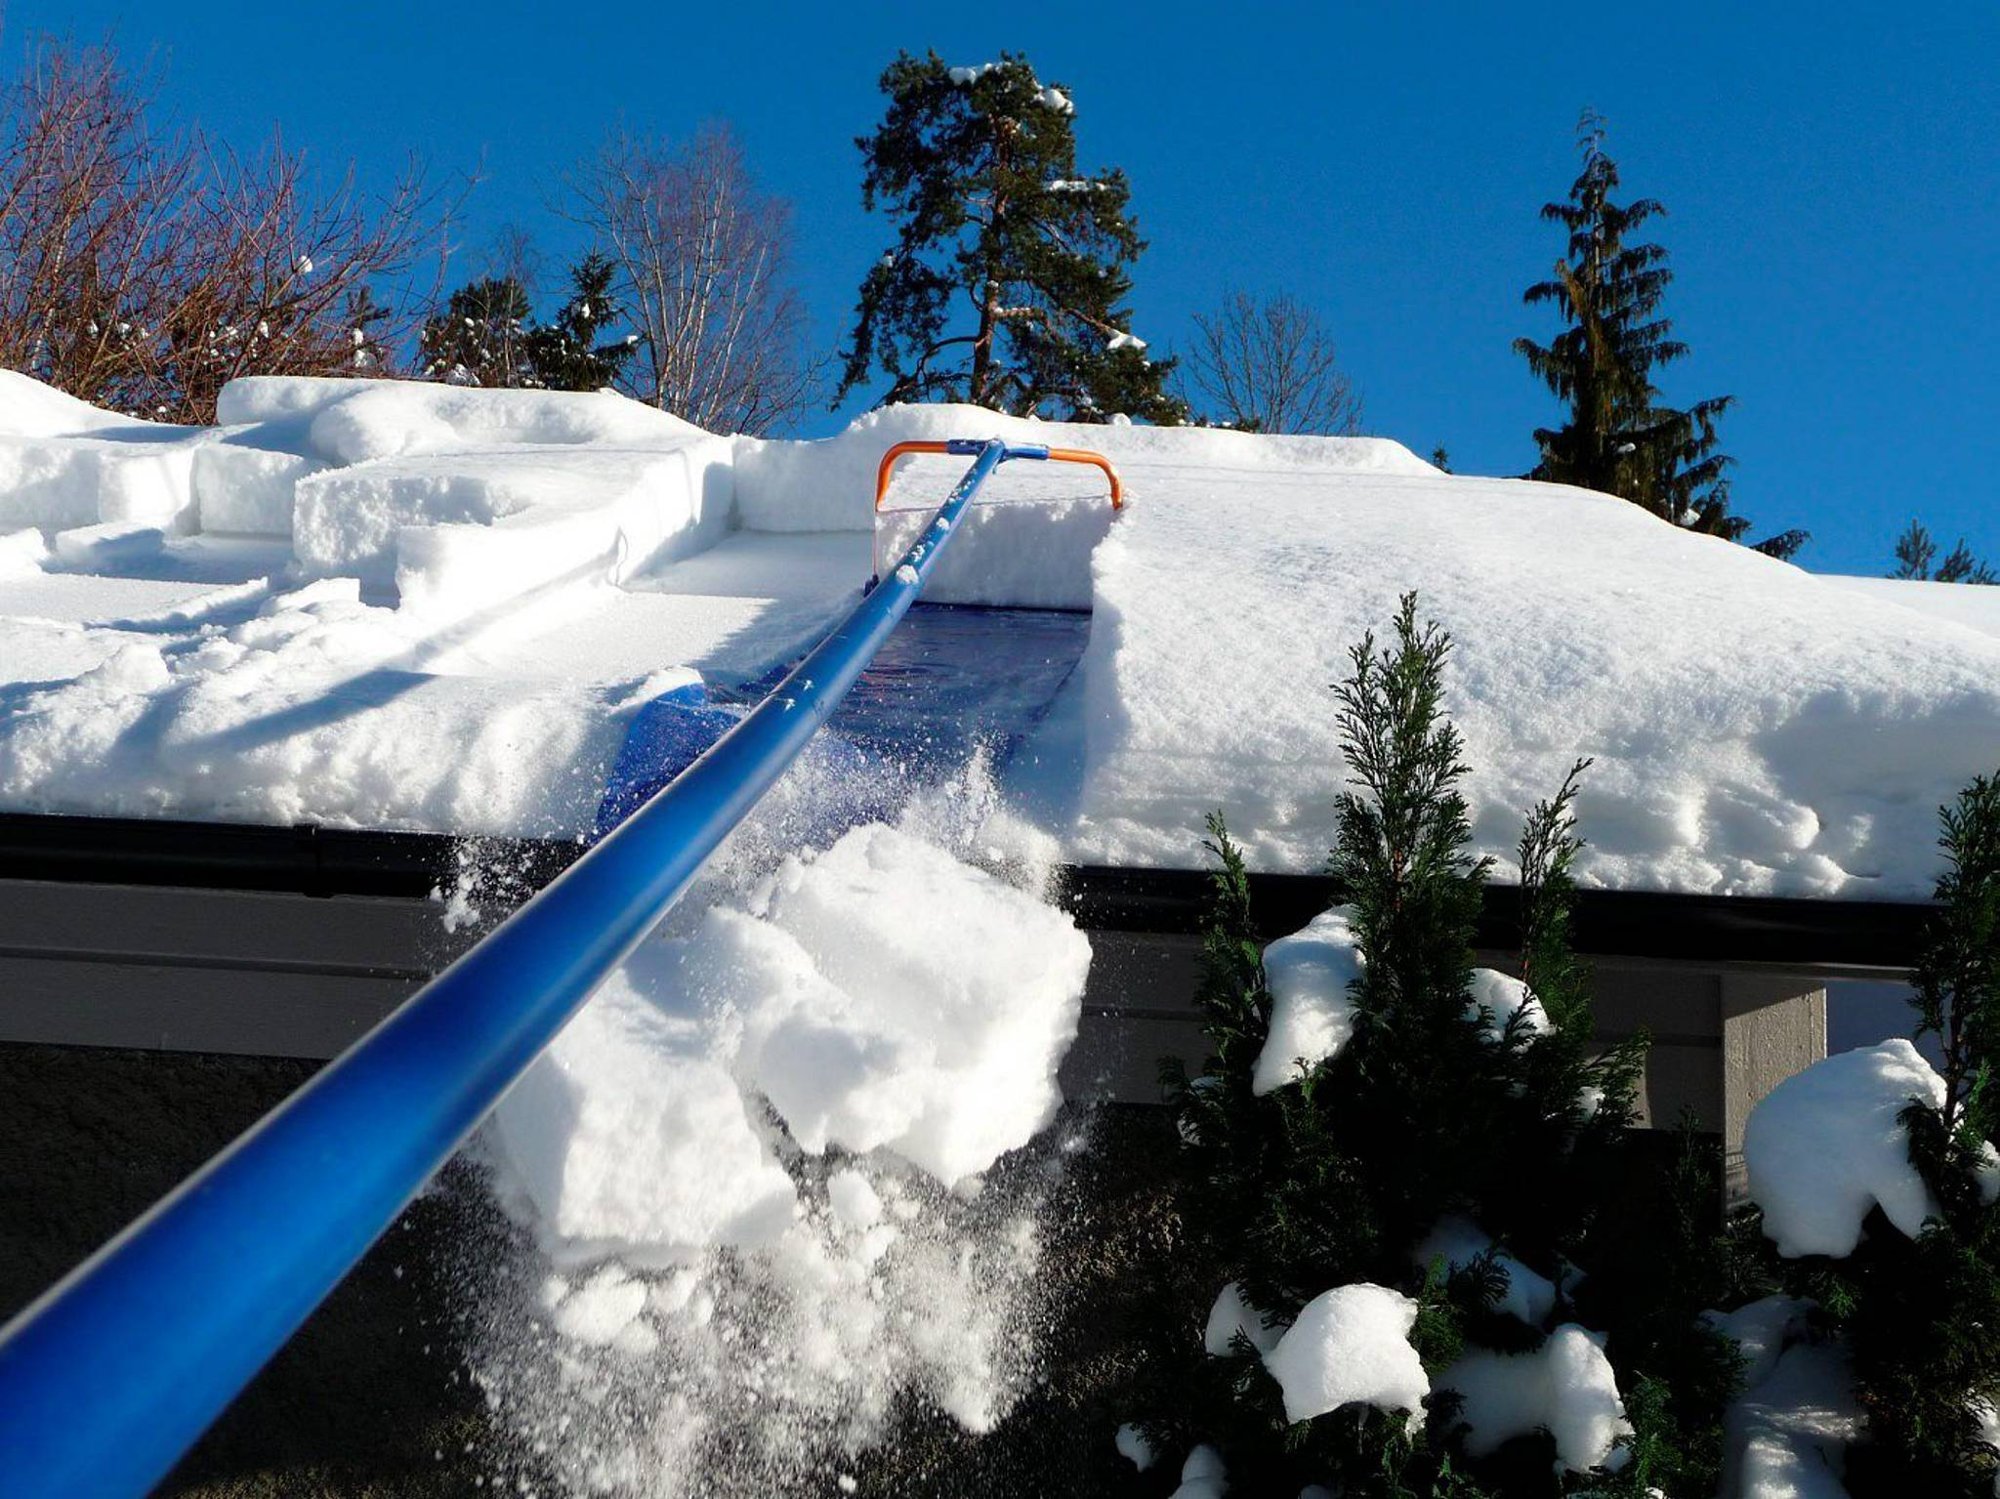 Уборка снега крыш домов. Скребок для уборки снега с крыши с тканью 1,9-6,3м 11646. Скребок для уборки снега с крыши с тканью 1,9-6,3м 11646 дракон. Скребок для снега с крыши с тканью 1.9-6.3м 11646. Скребок для уборки снега с крыши скрепер с тканью "лавина" 1,9-6,3м 11646.